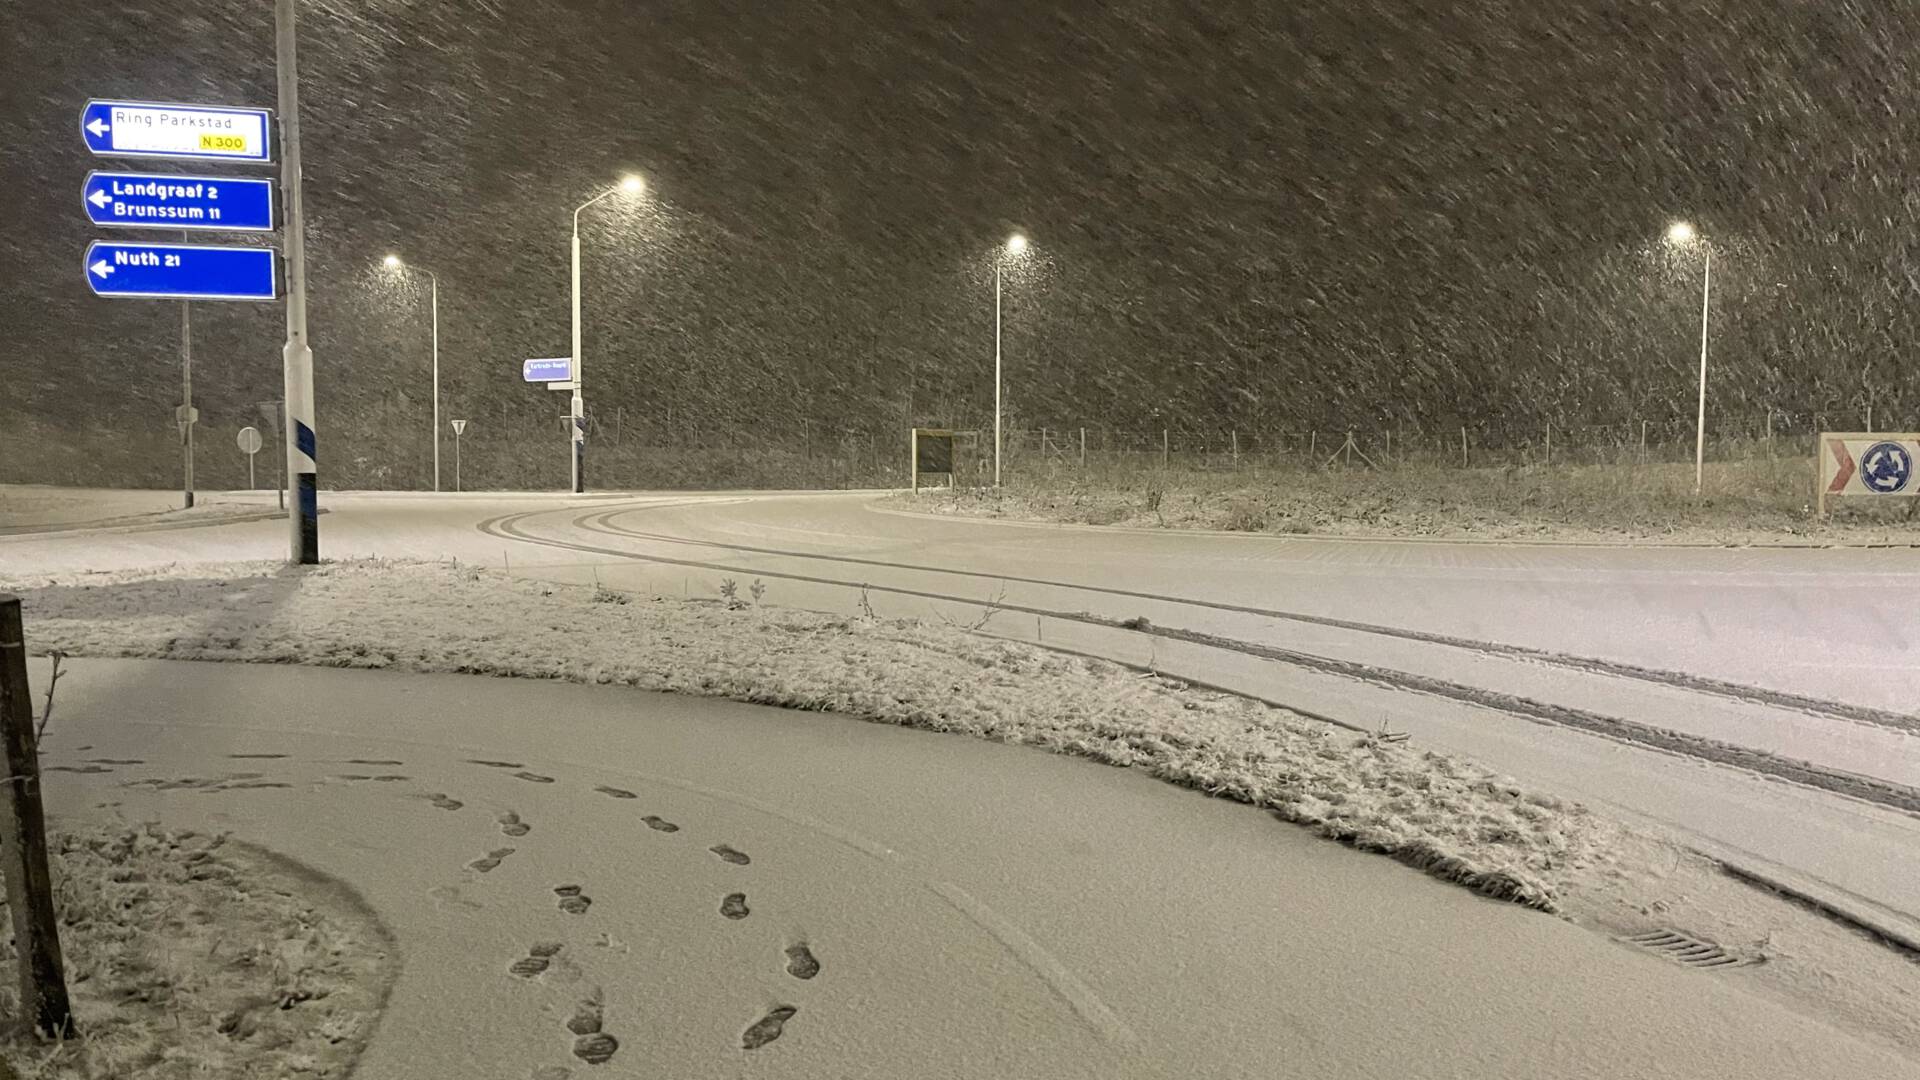 الثلوج في ليمبورغ، احذر من التزحلق، رمز أصفر لكامل هولندا